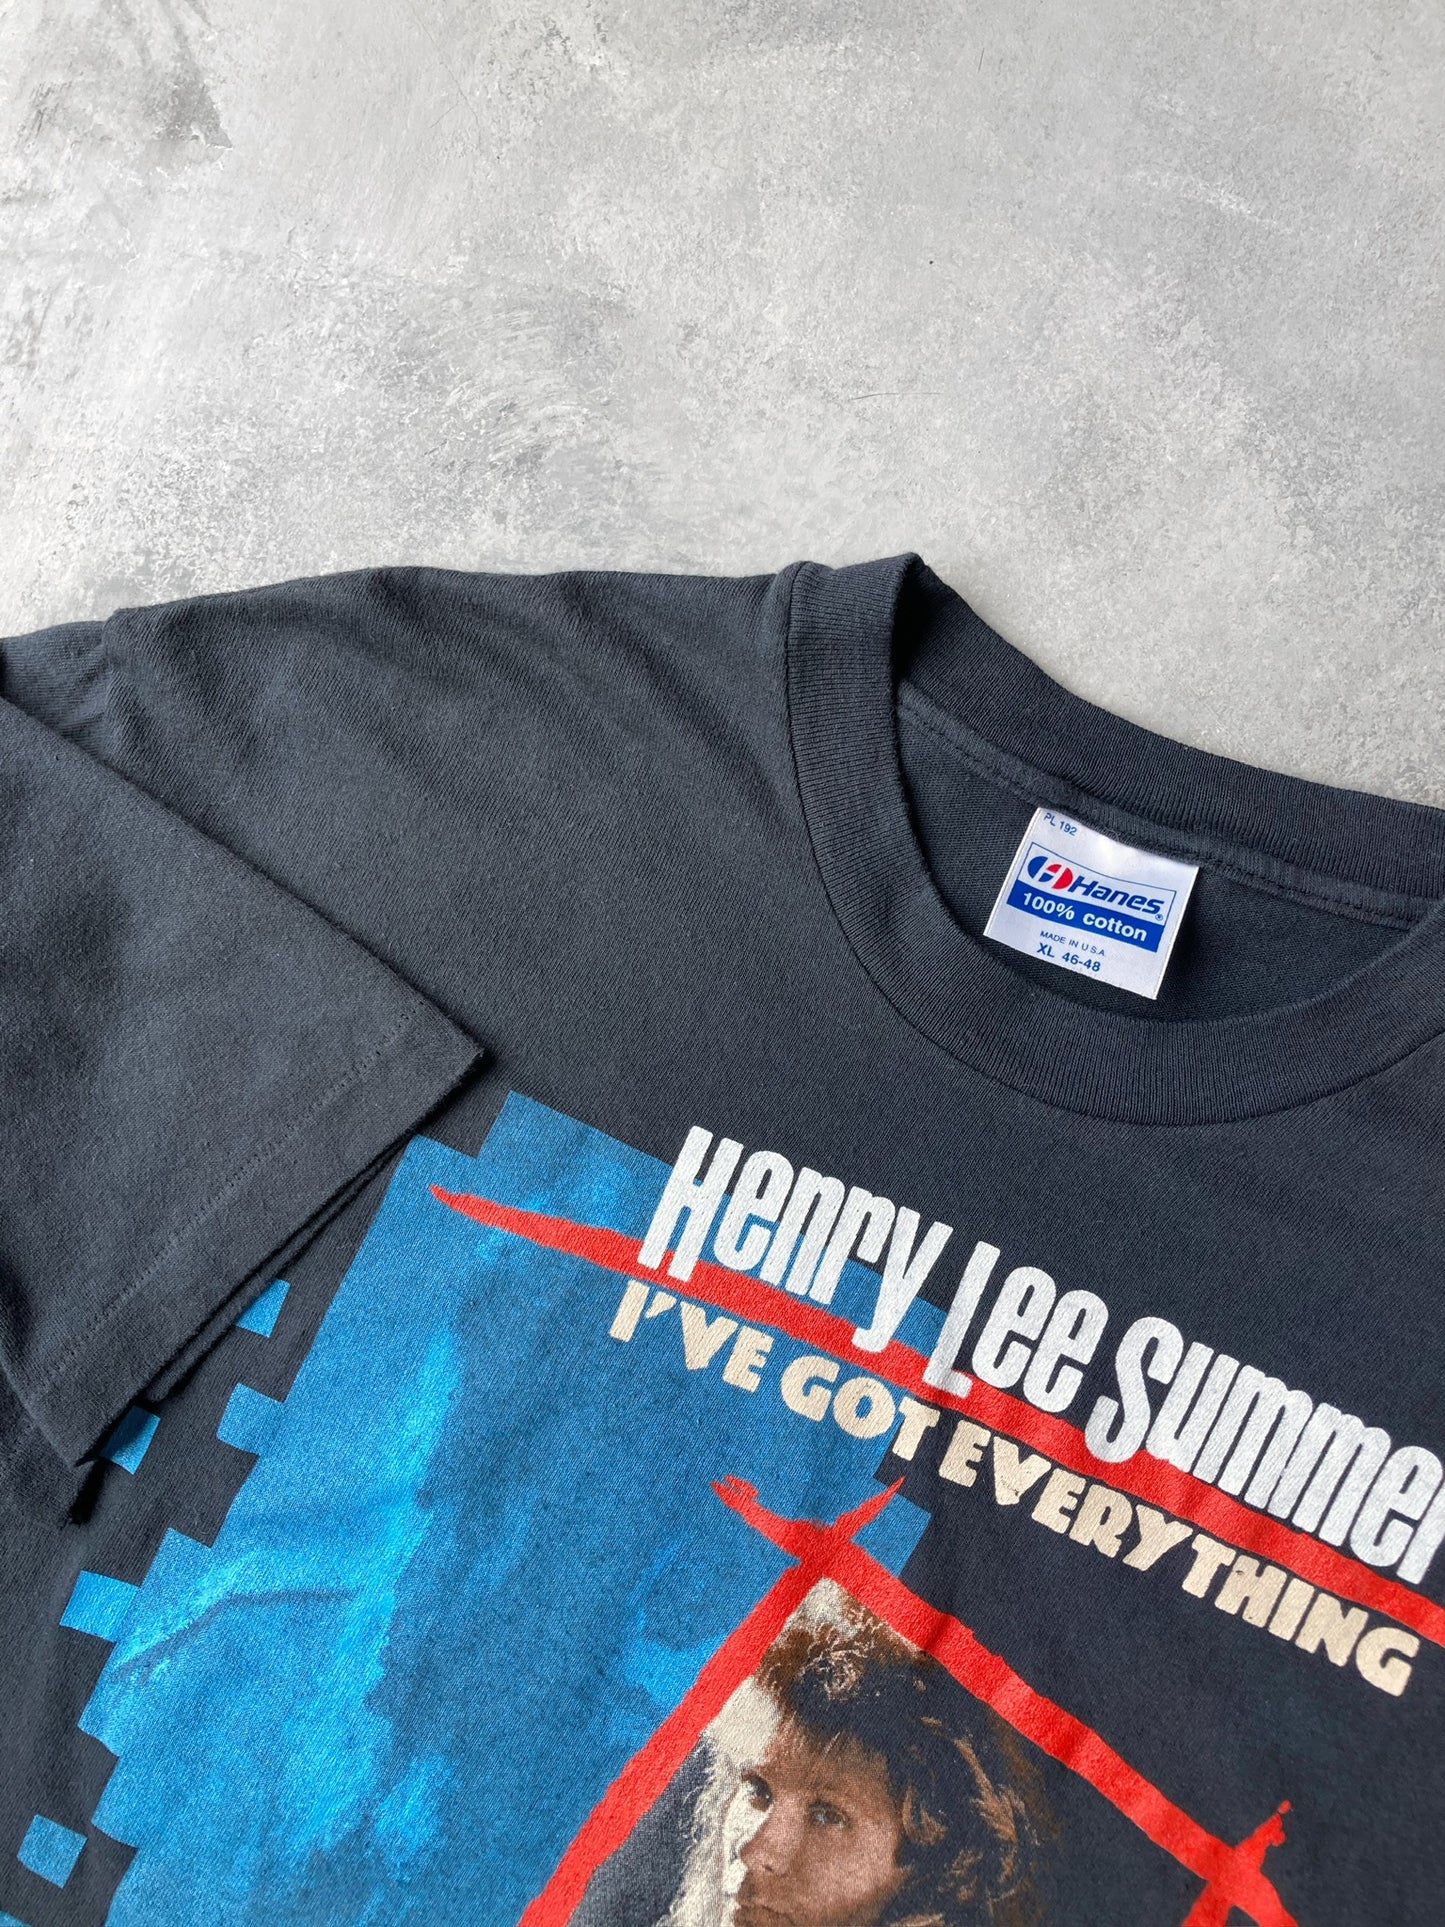 Henry Lee Summer T-Shirt '89 - Large